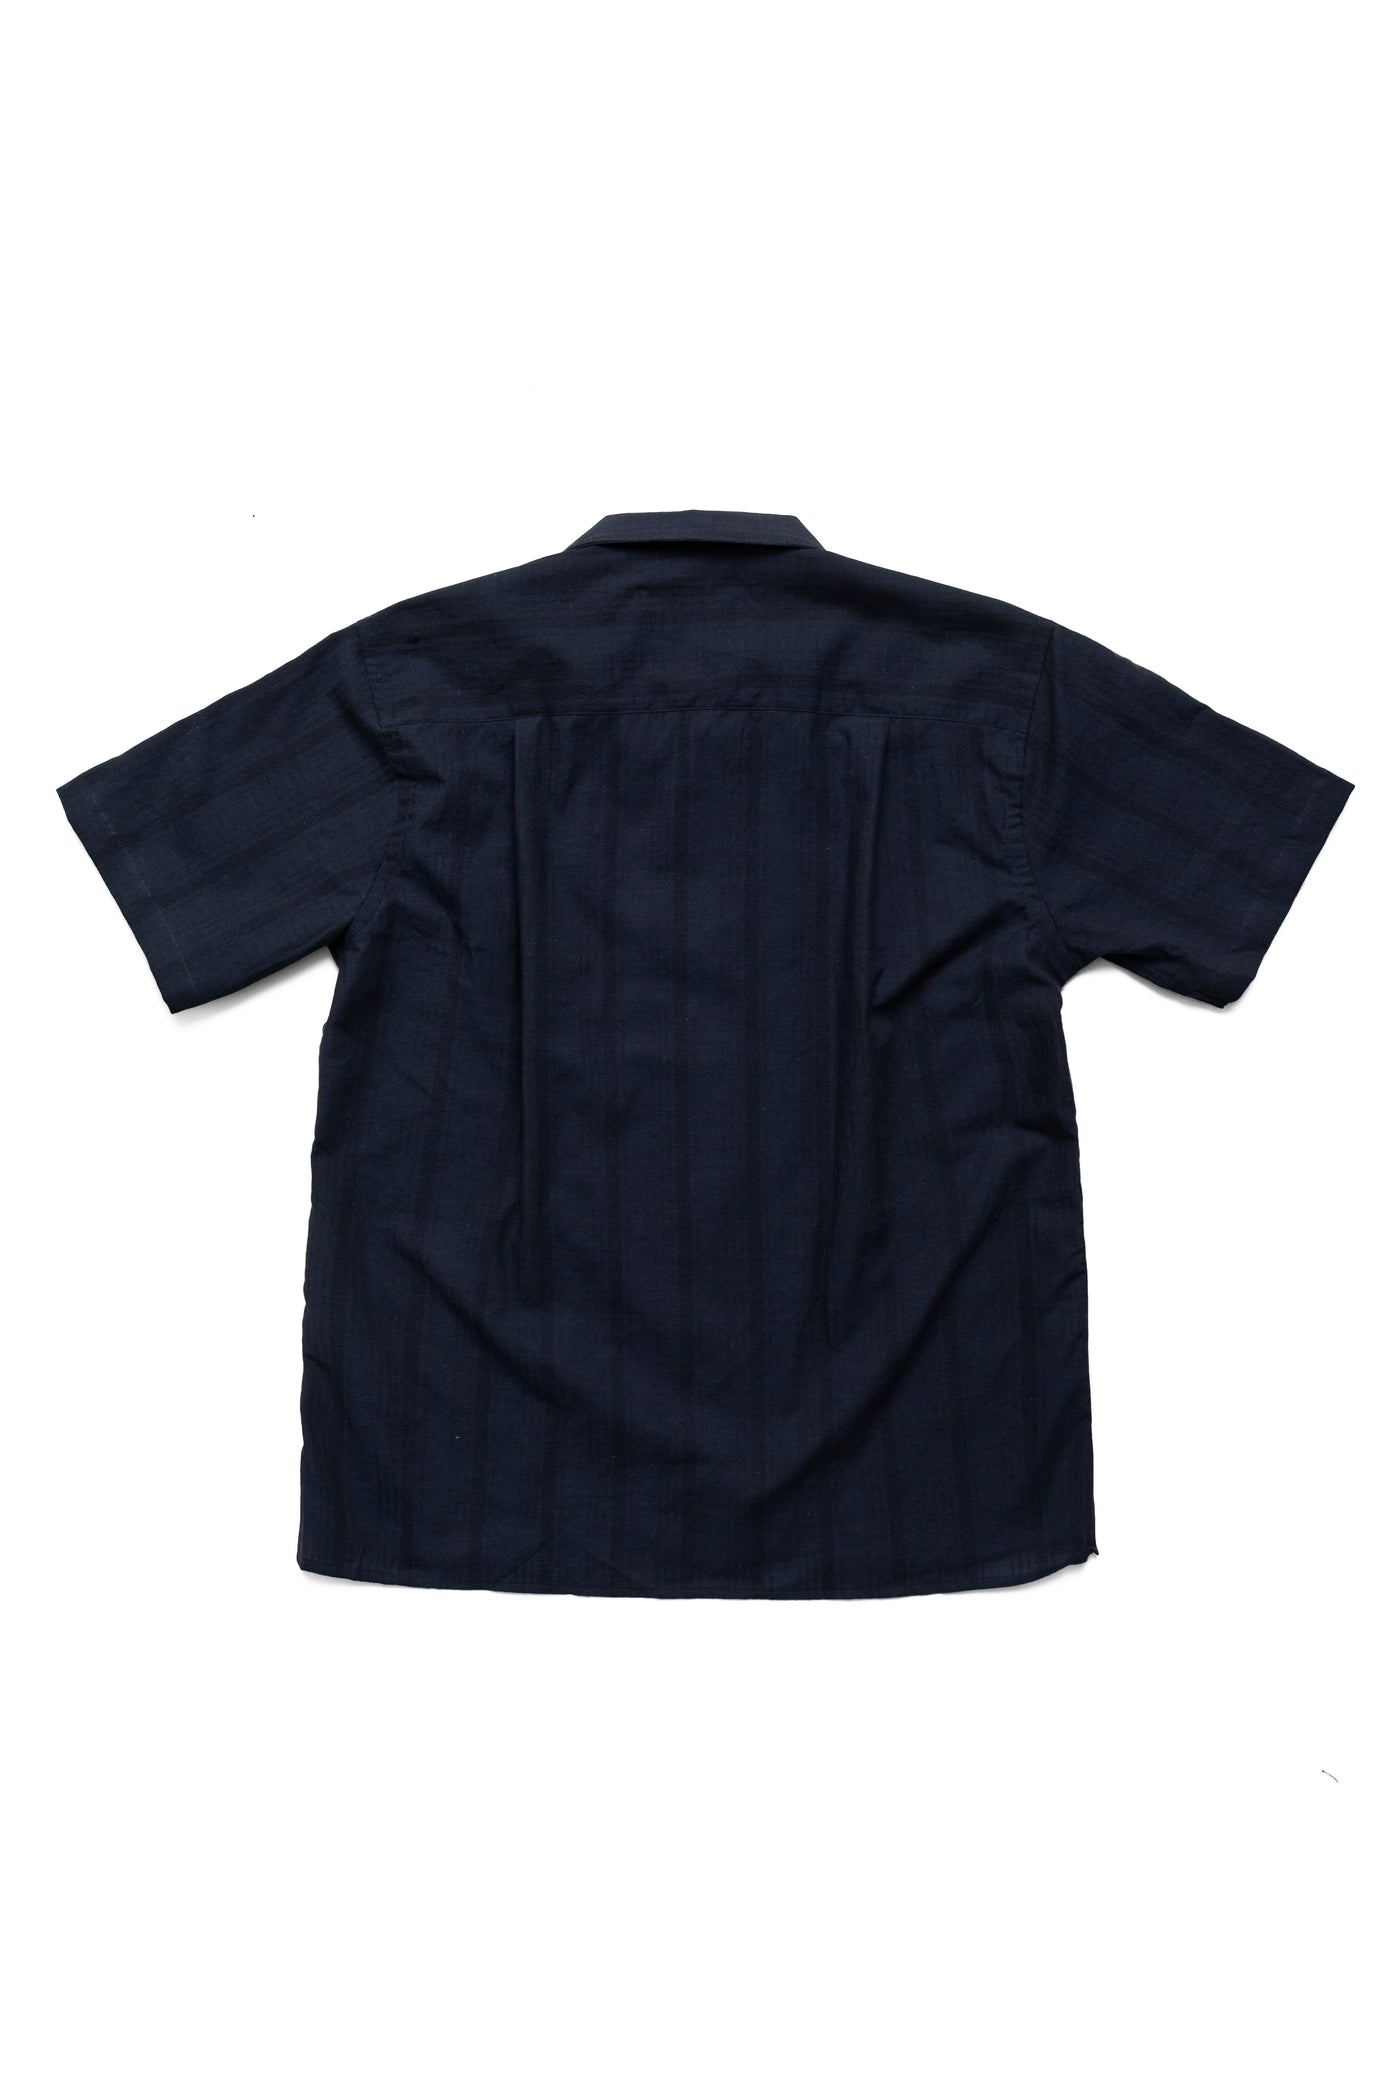 S/S Beach Shirt - Navy